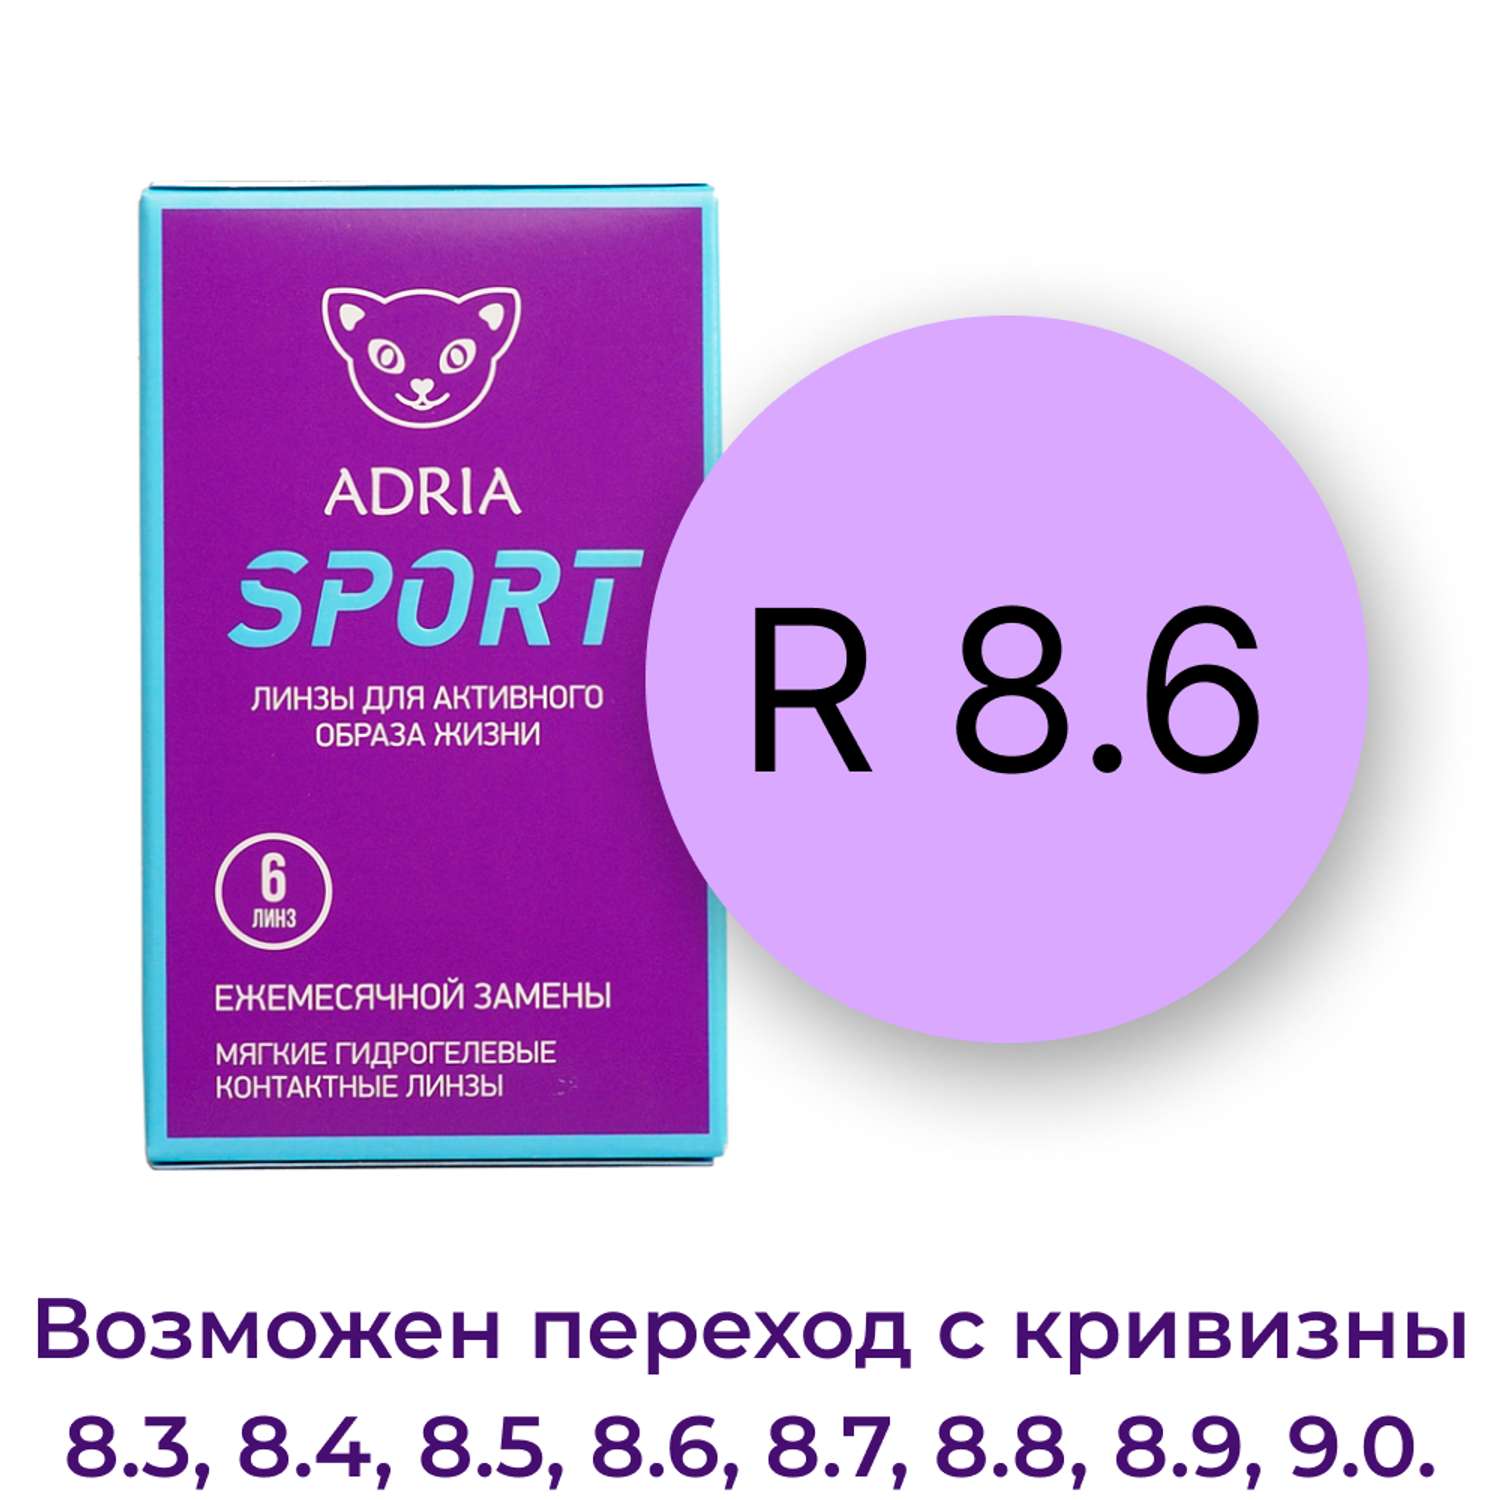 Контактные линзы ADRIA Sport 6 линз R 8.6 -4.50 - фото 3